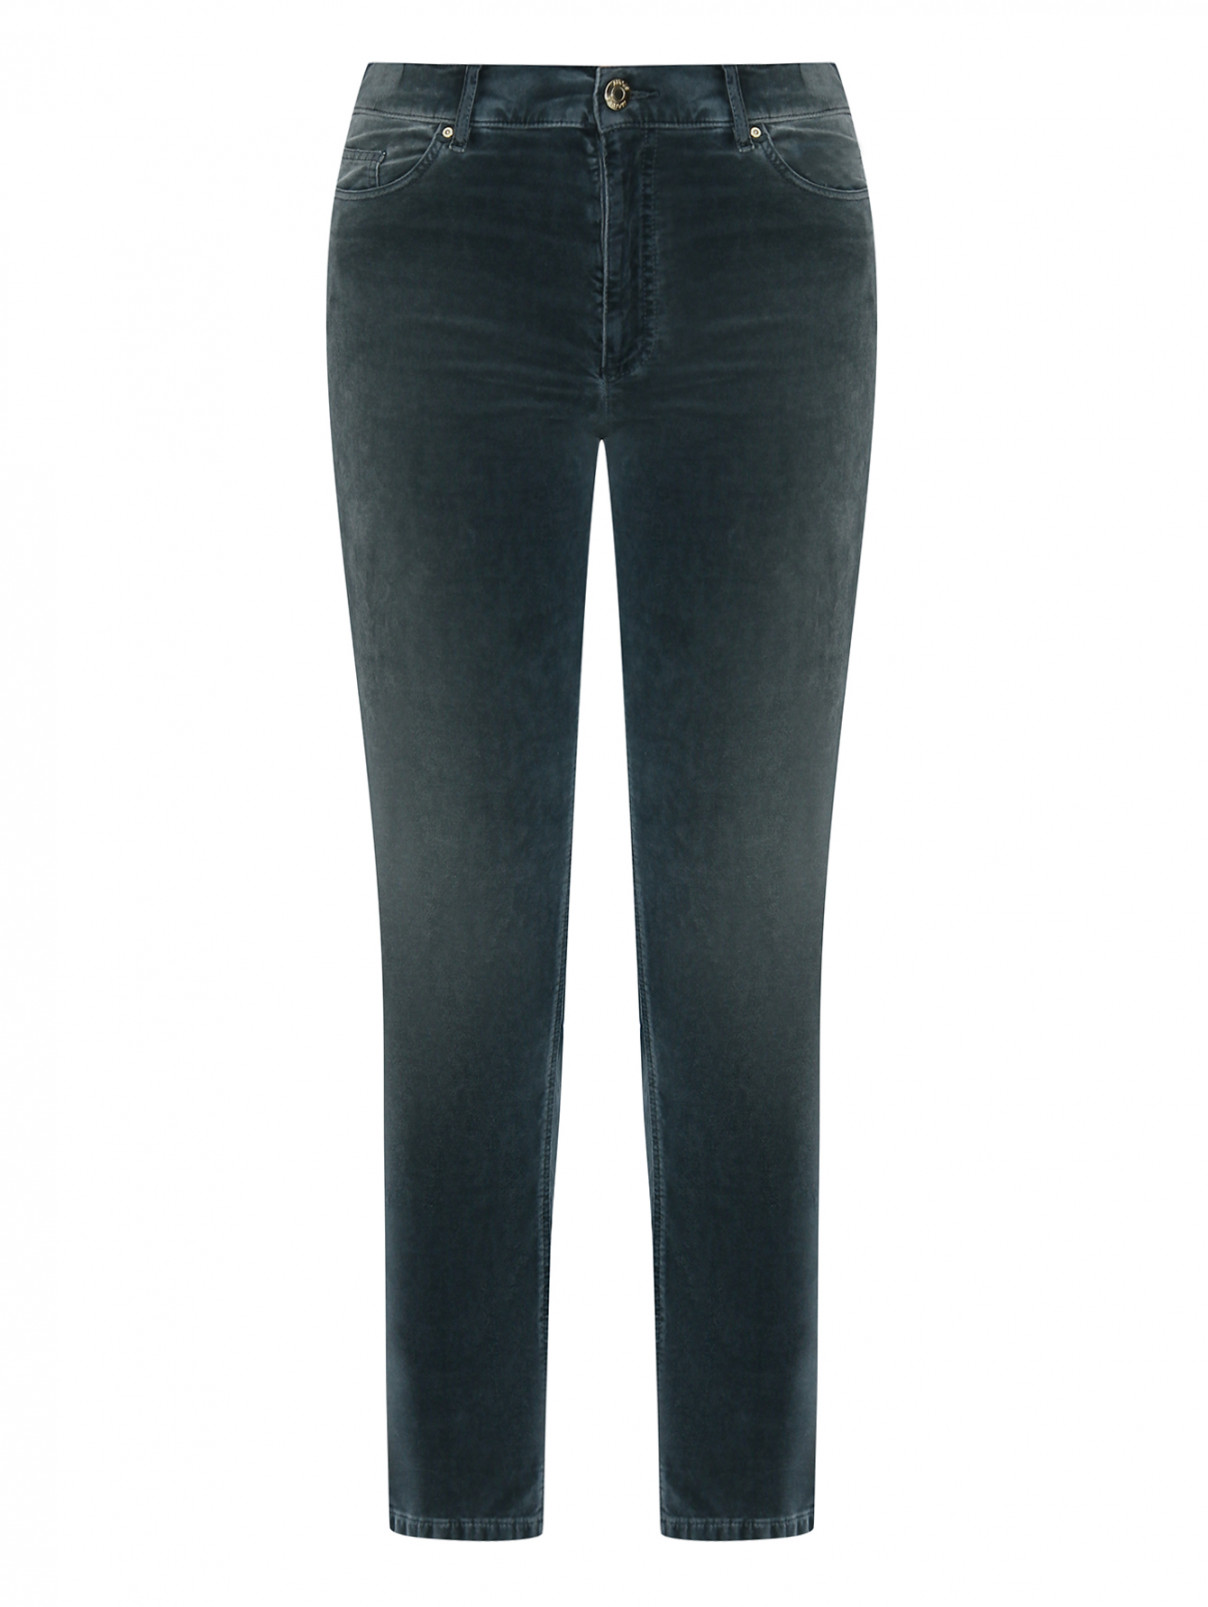 Вельветовые брюки из смешанного хлопка Marina Rinaldi  –  Общий вид  – Цвет:  Зеленый